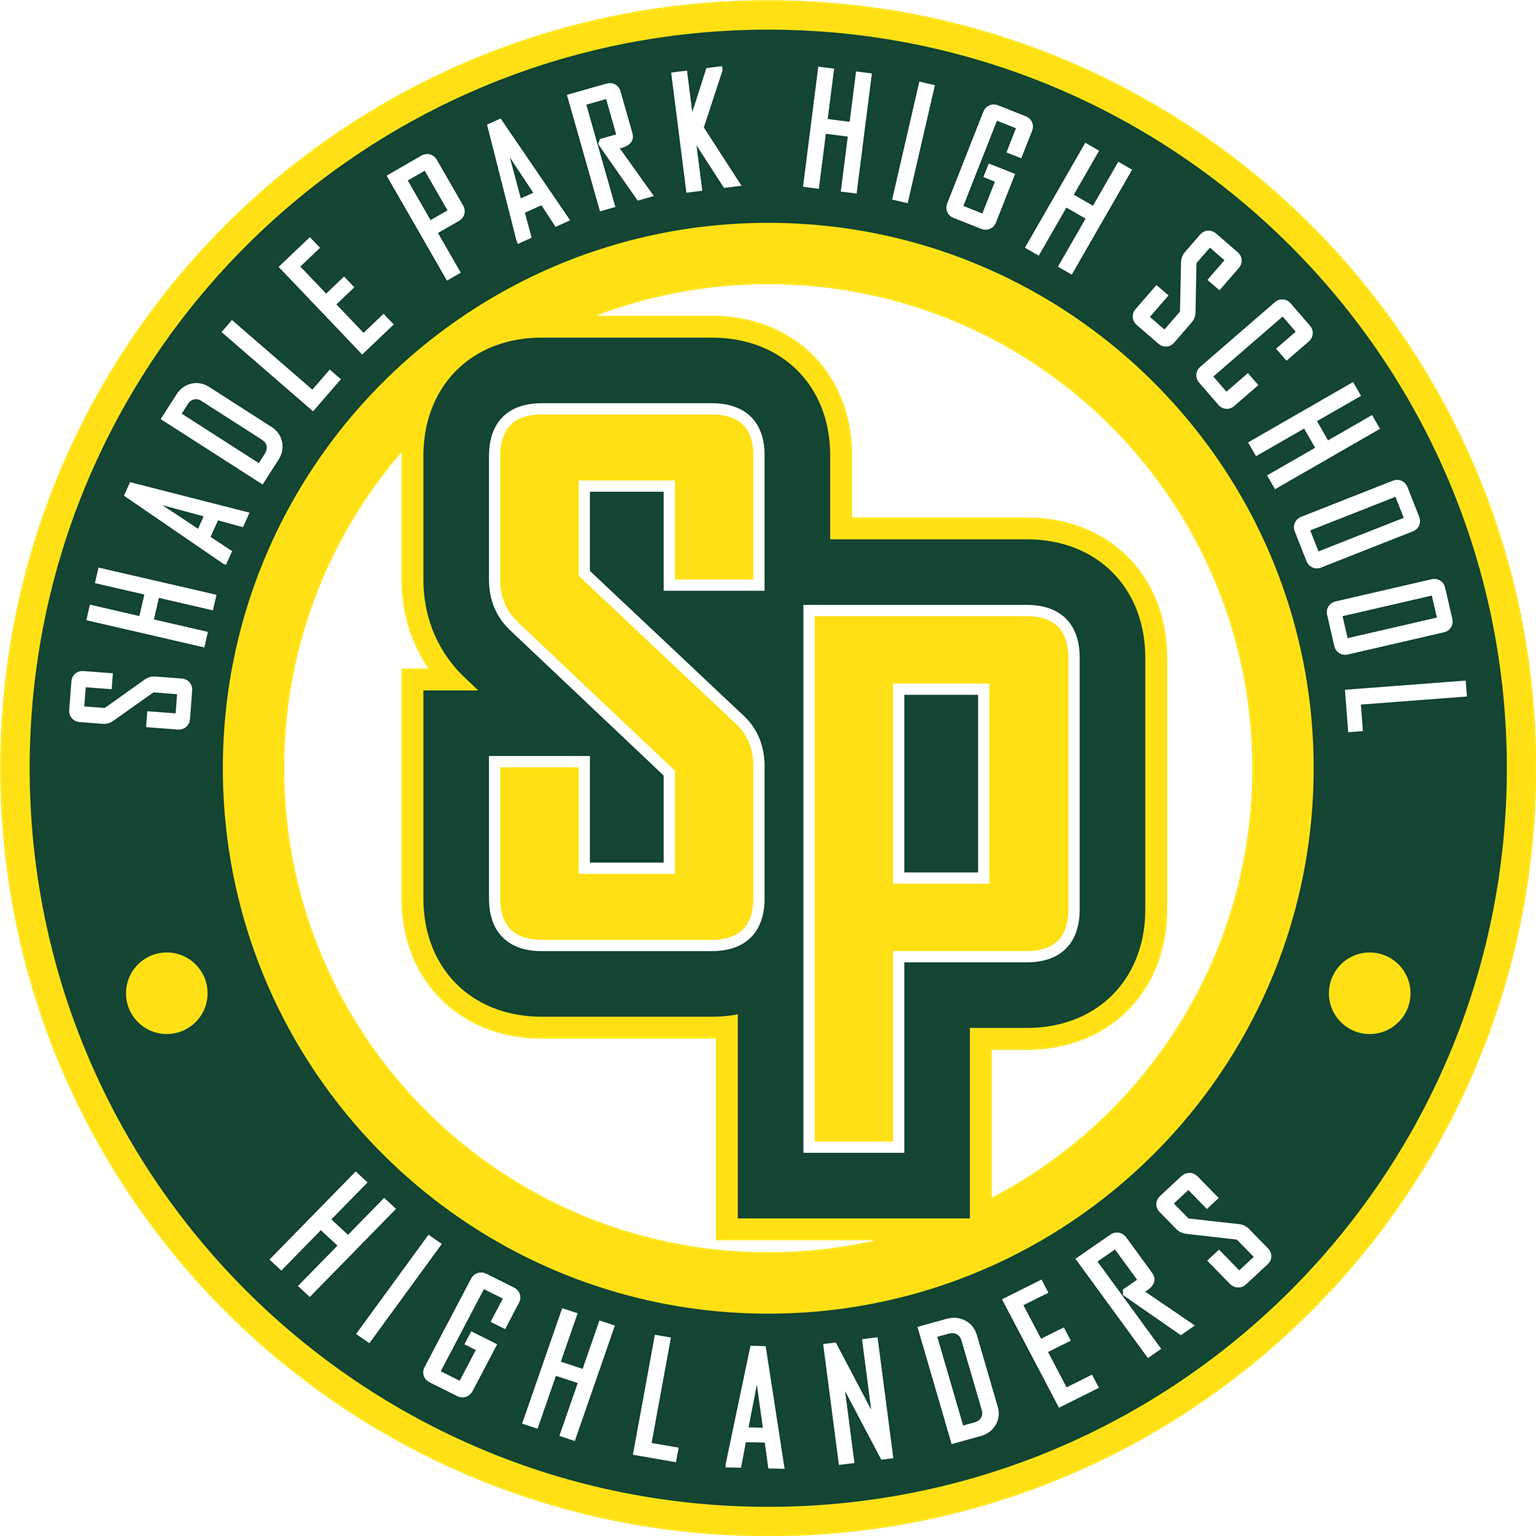 Shadle Park High School